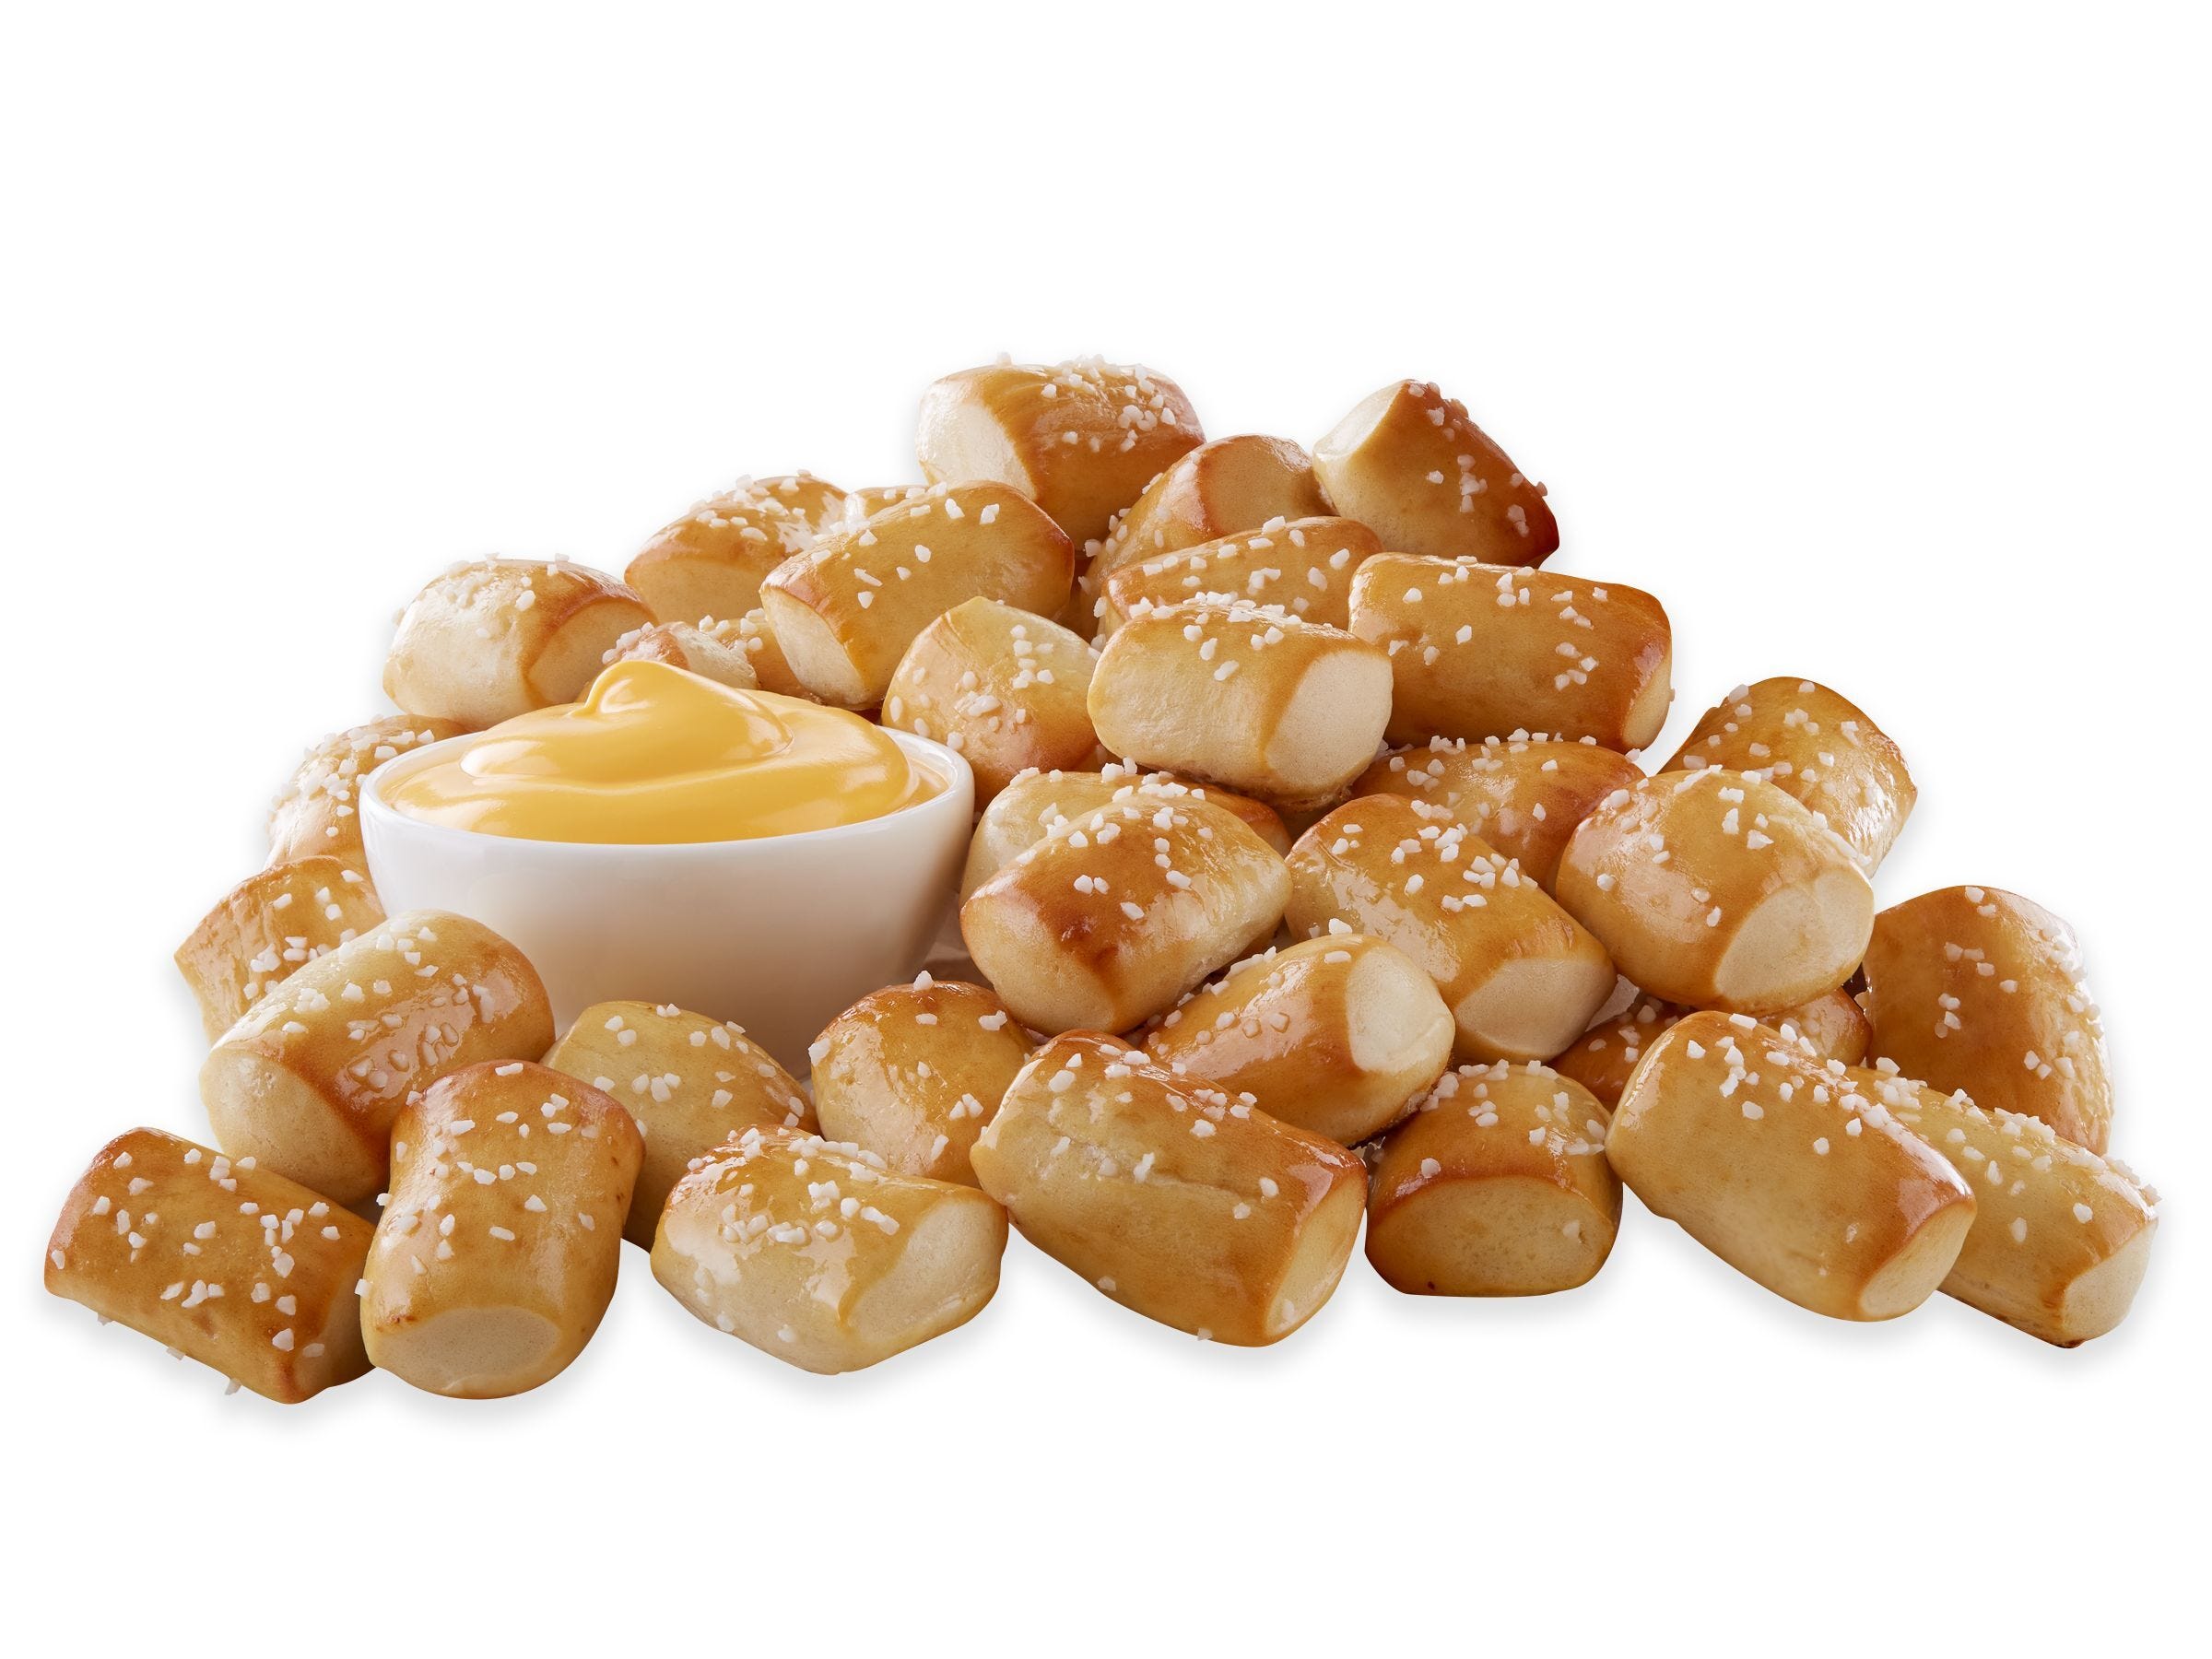 celebrate national pretzel day: auntie anne's, wetzel's pretzels among places to get deals